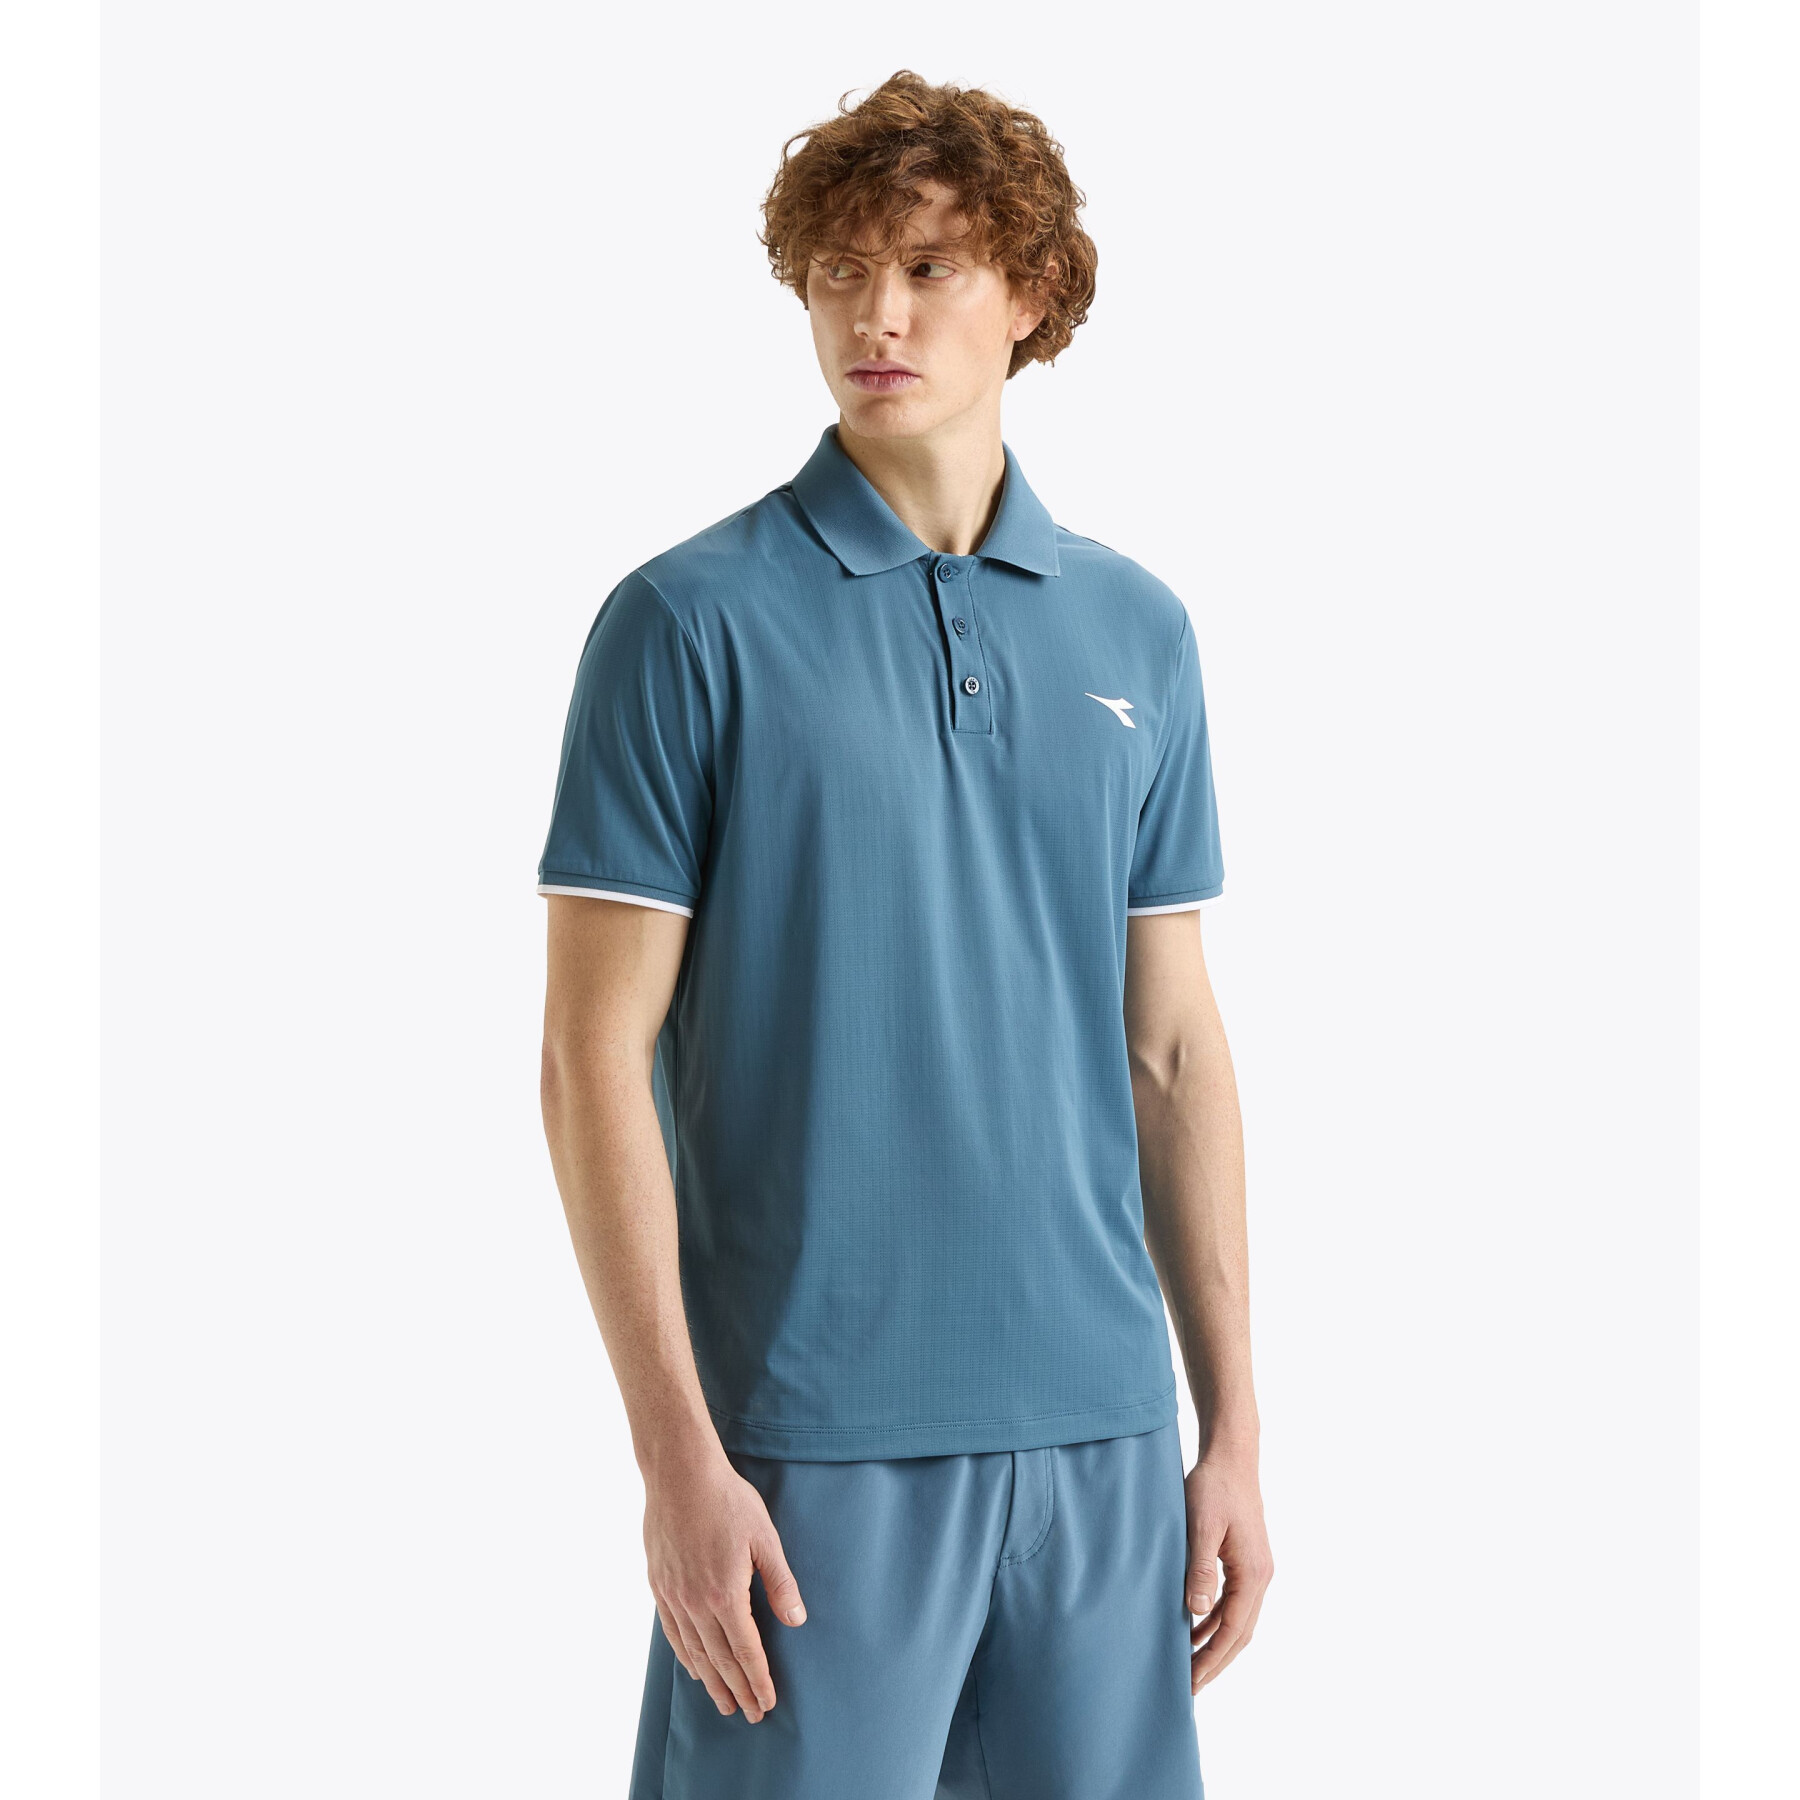 Tennis polo shirt Diadora Icon